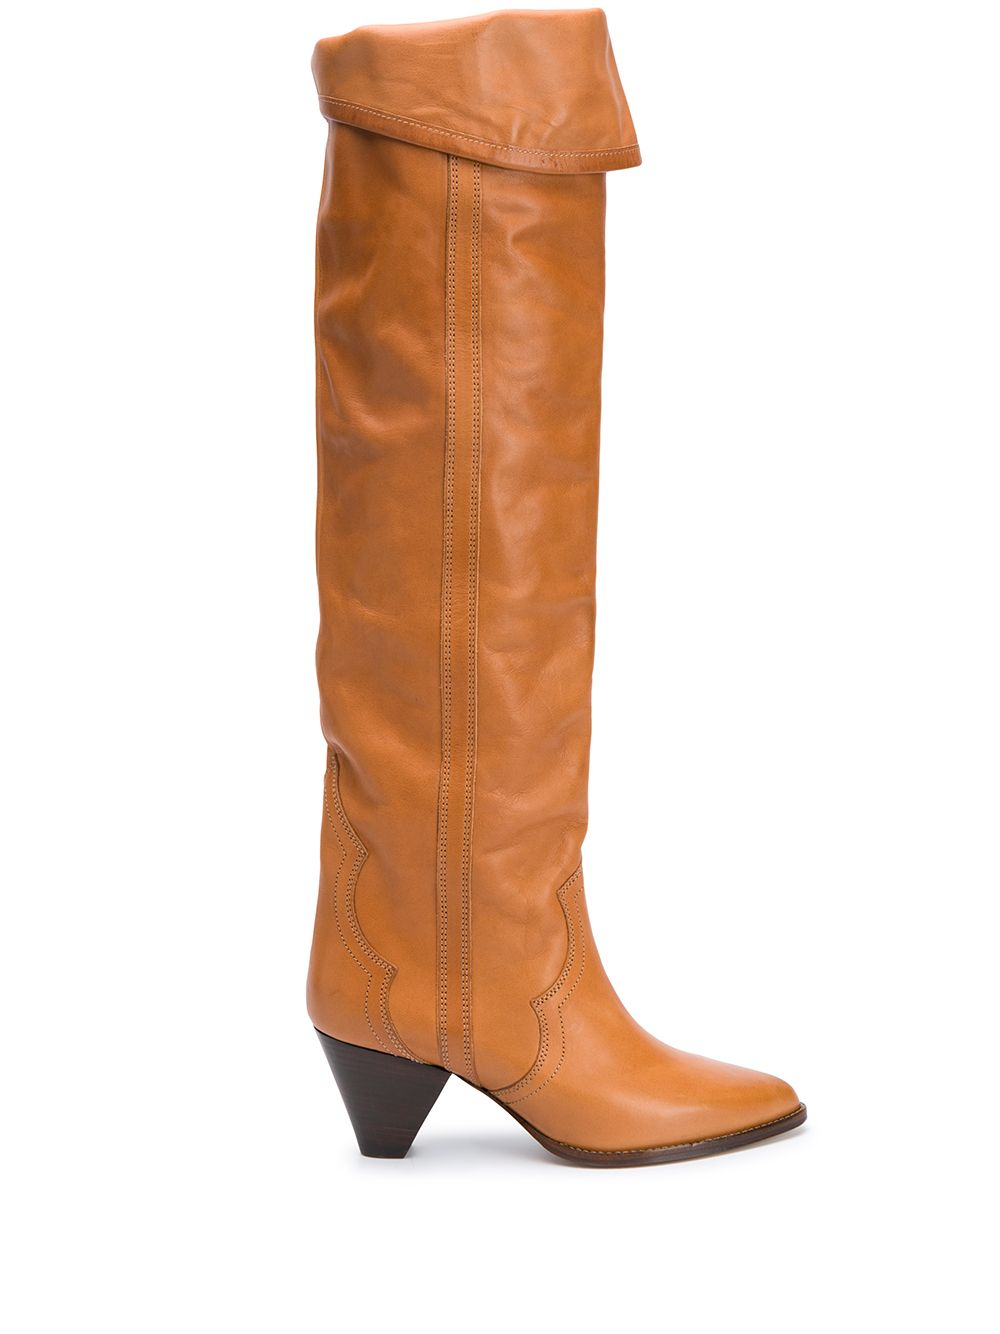 Remko Leather Boots дамски обувки Isabel Marant 847989062_37